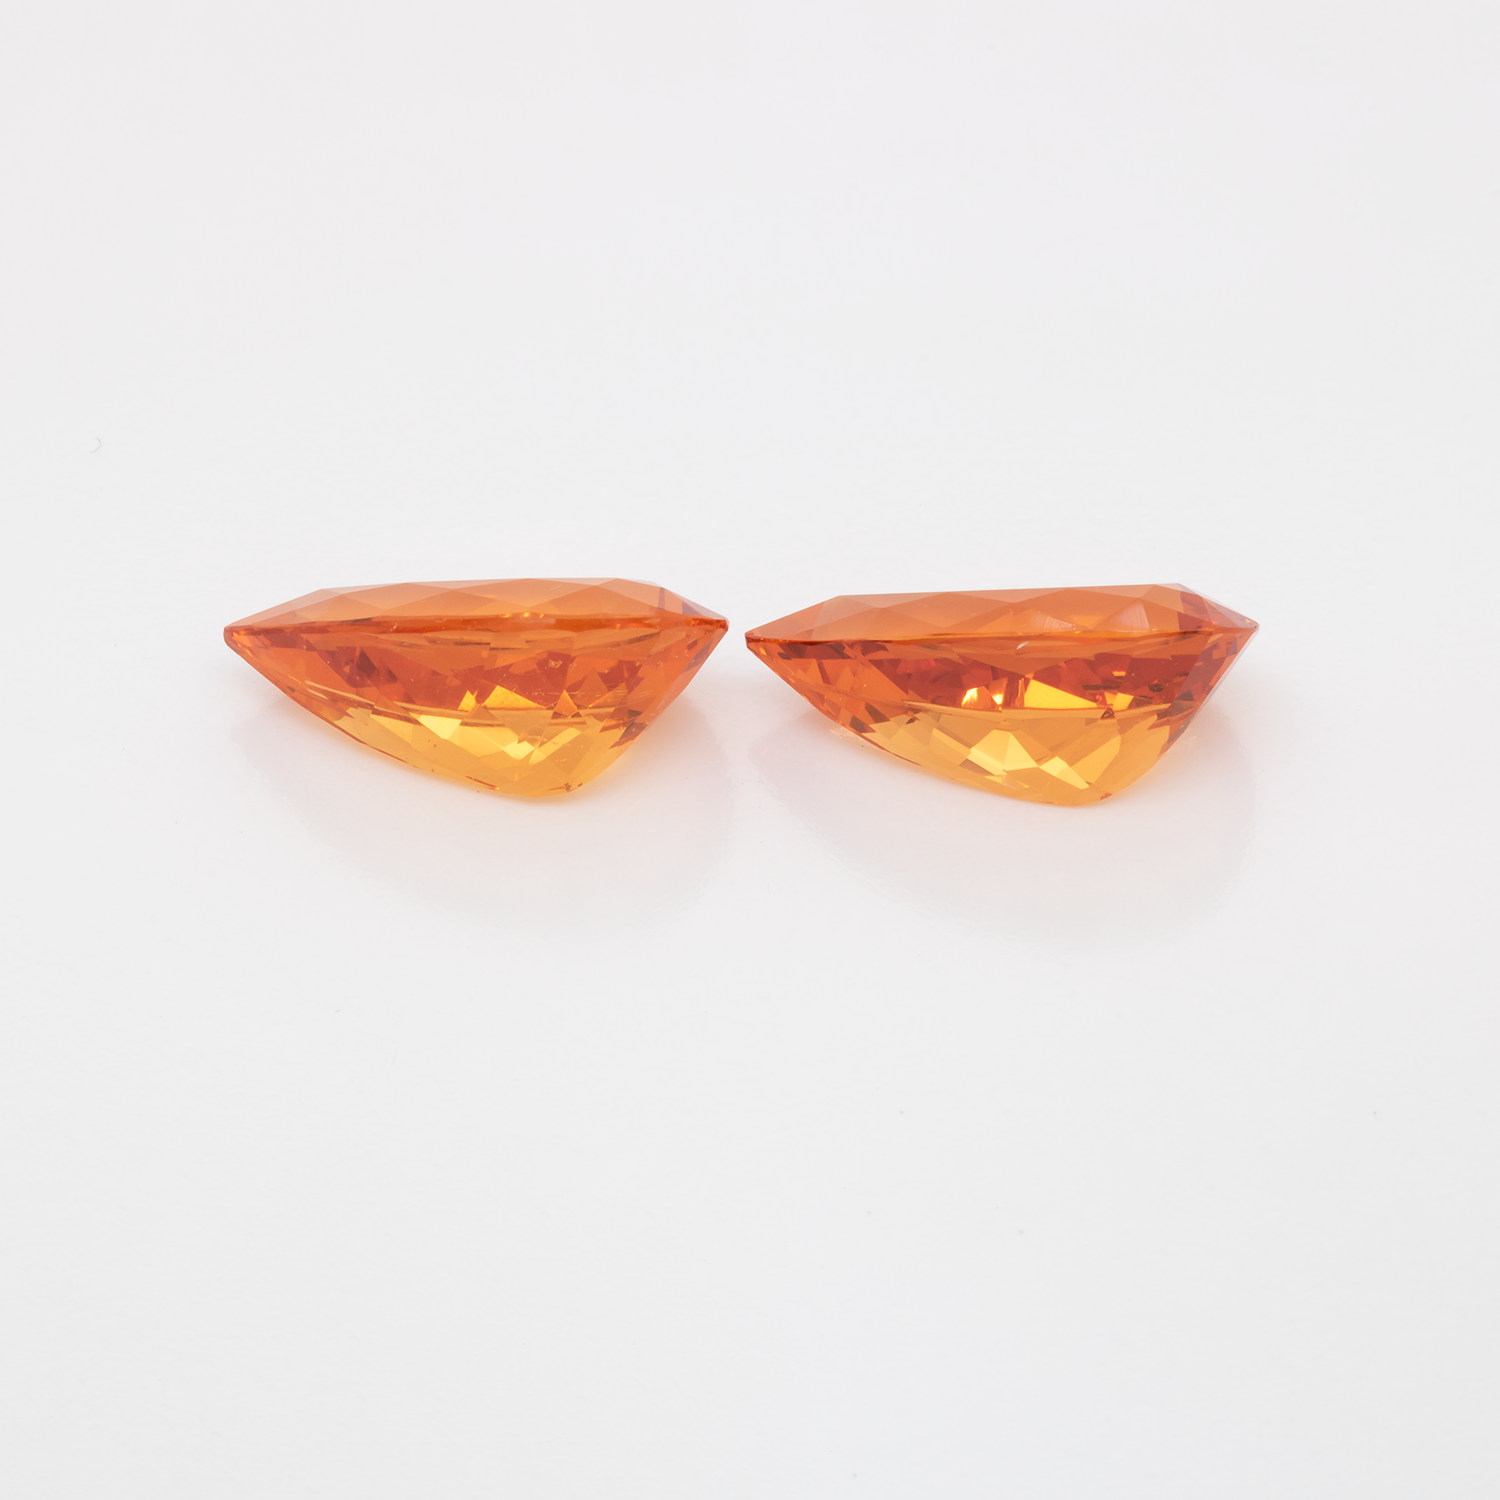 Mandarin Granat Paar - orange, birnform, 13x7.5 mm, 7.76 cts, Nr. MG99059